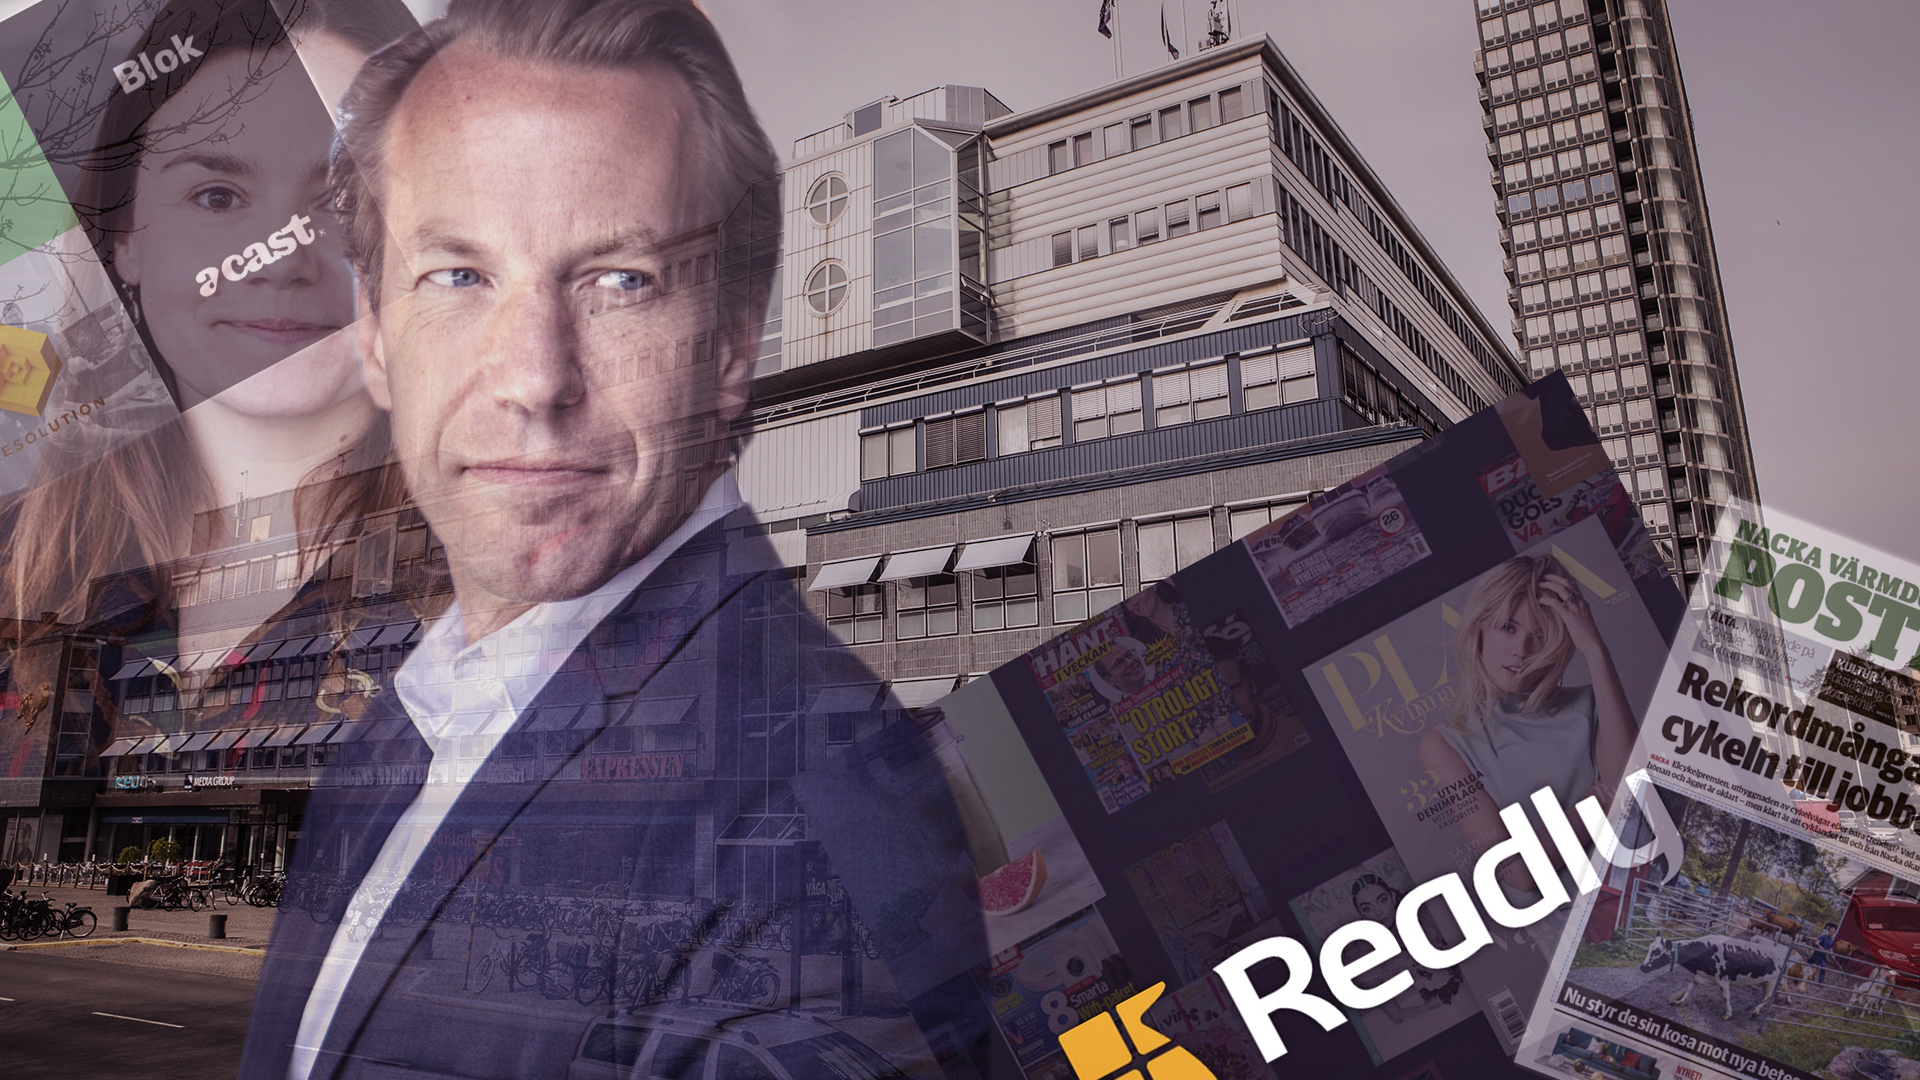 Jätteannonsören Media Markt lämnar svenska marknaden - Resumé